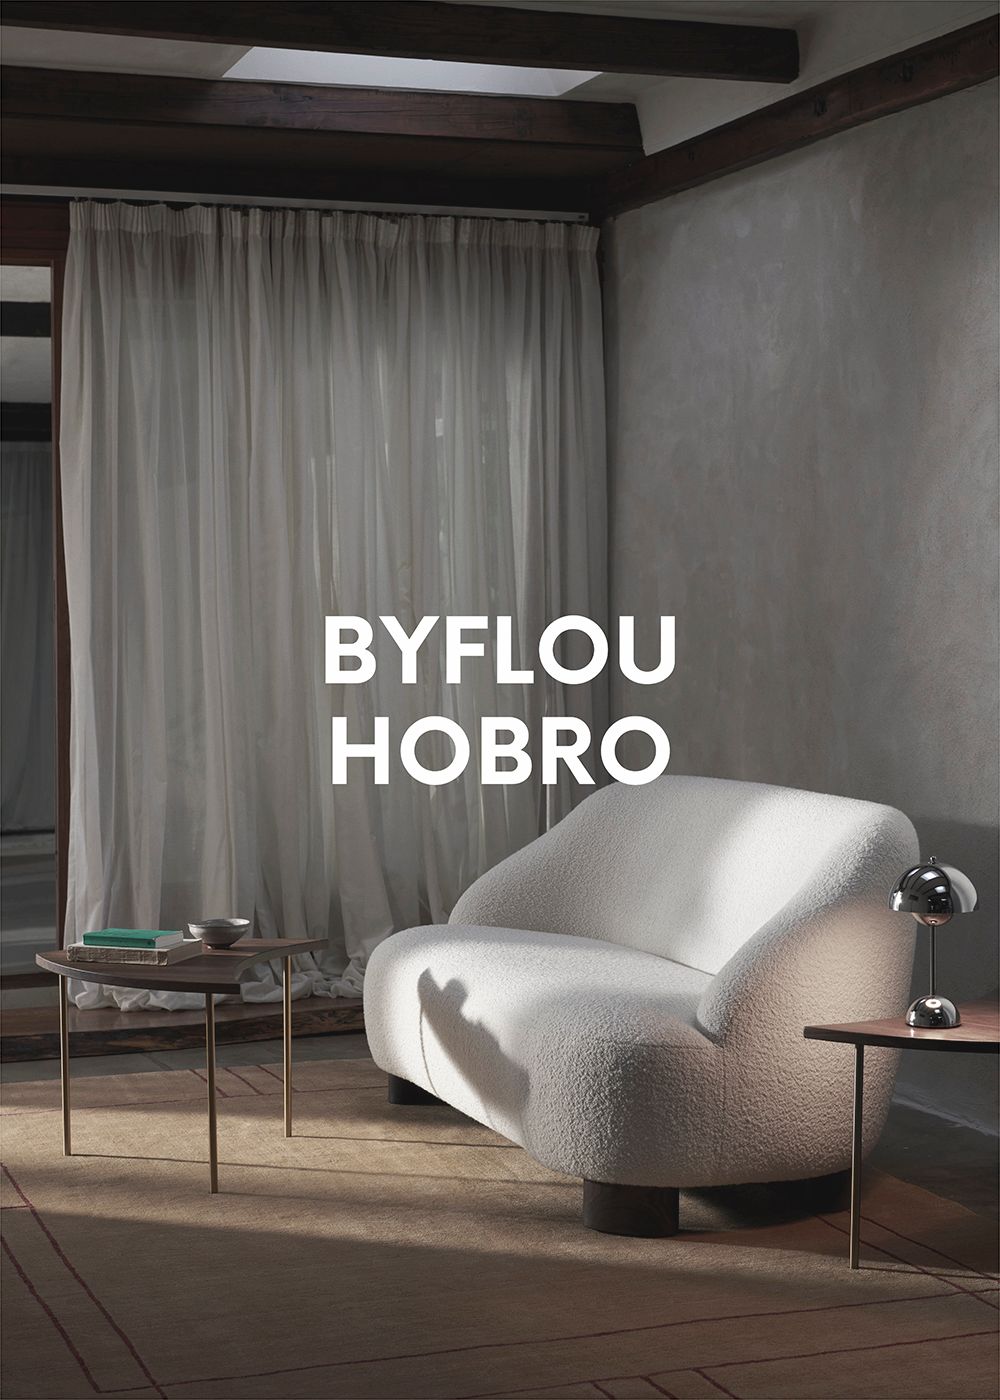 Byflou Showroom in Hobro, Denmark